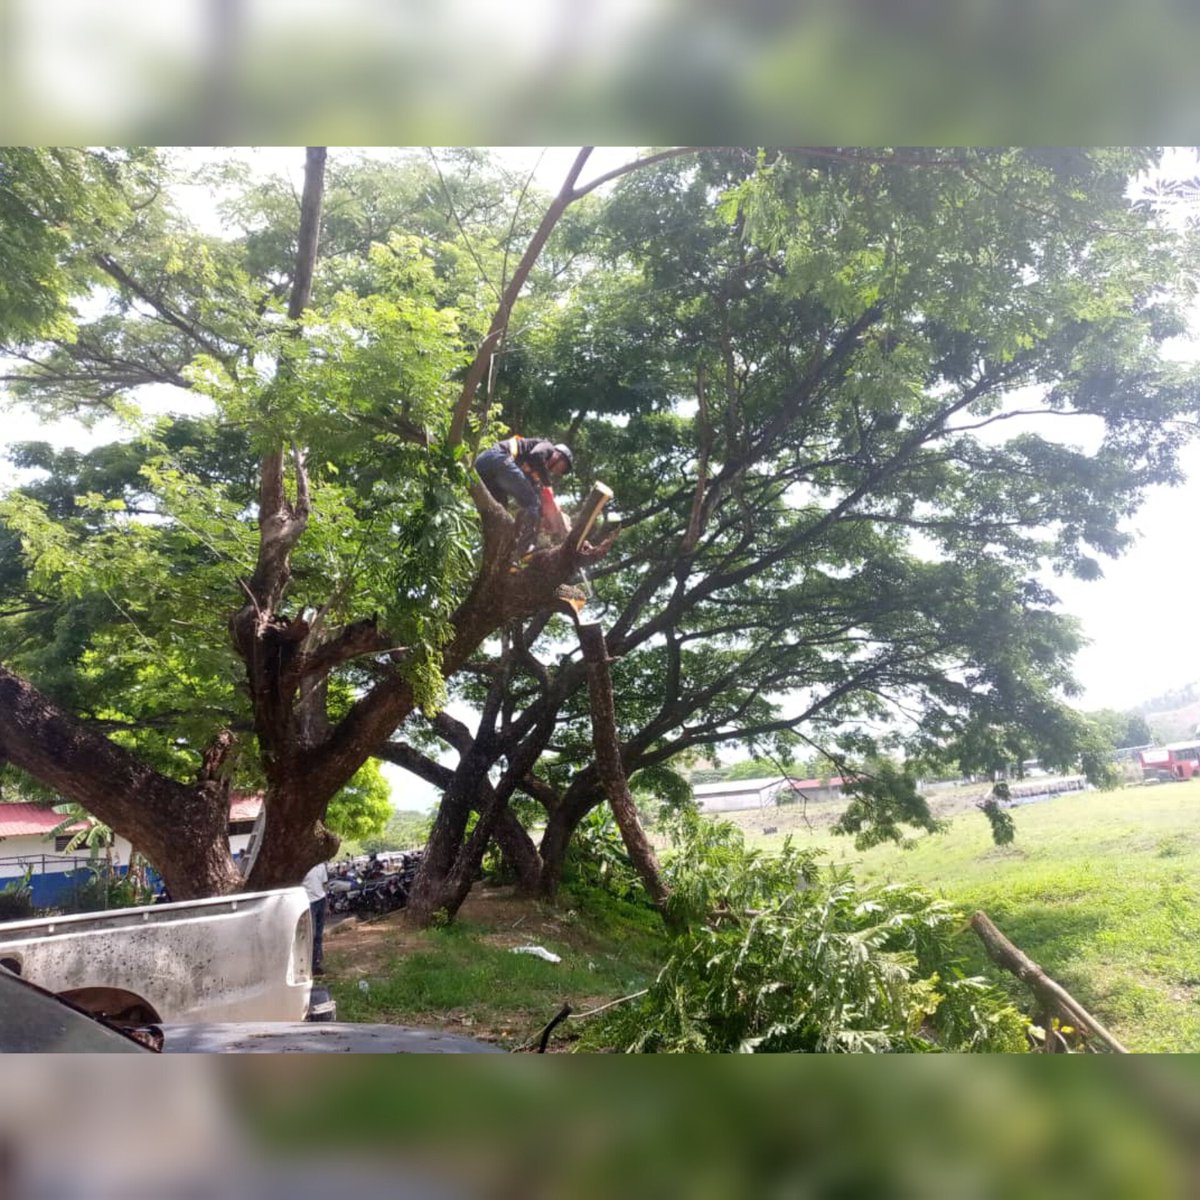 En compañía de estudiantes de la Unes, bomberos del estado Guárico y estudiantes de Defensa Civil se llevaron a cabo trabajos de embellecimiento en la Dirección de Transporte de nuestra universidad, donde realizaron la poda selectiva de árboles #Unerg